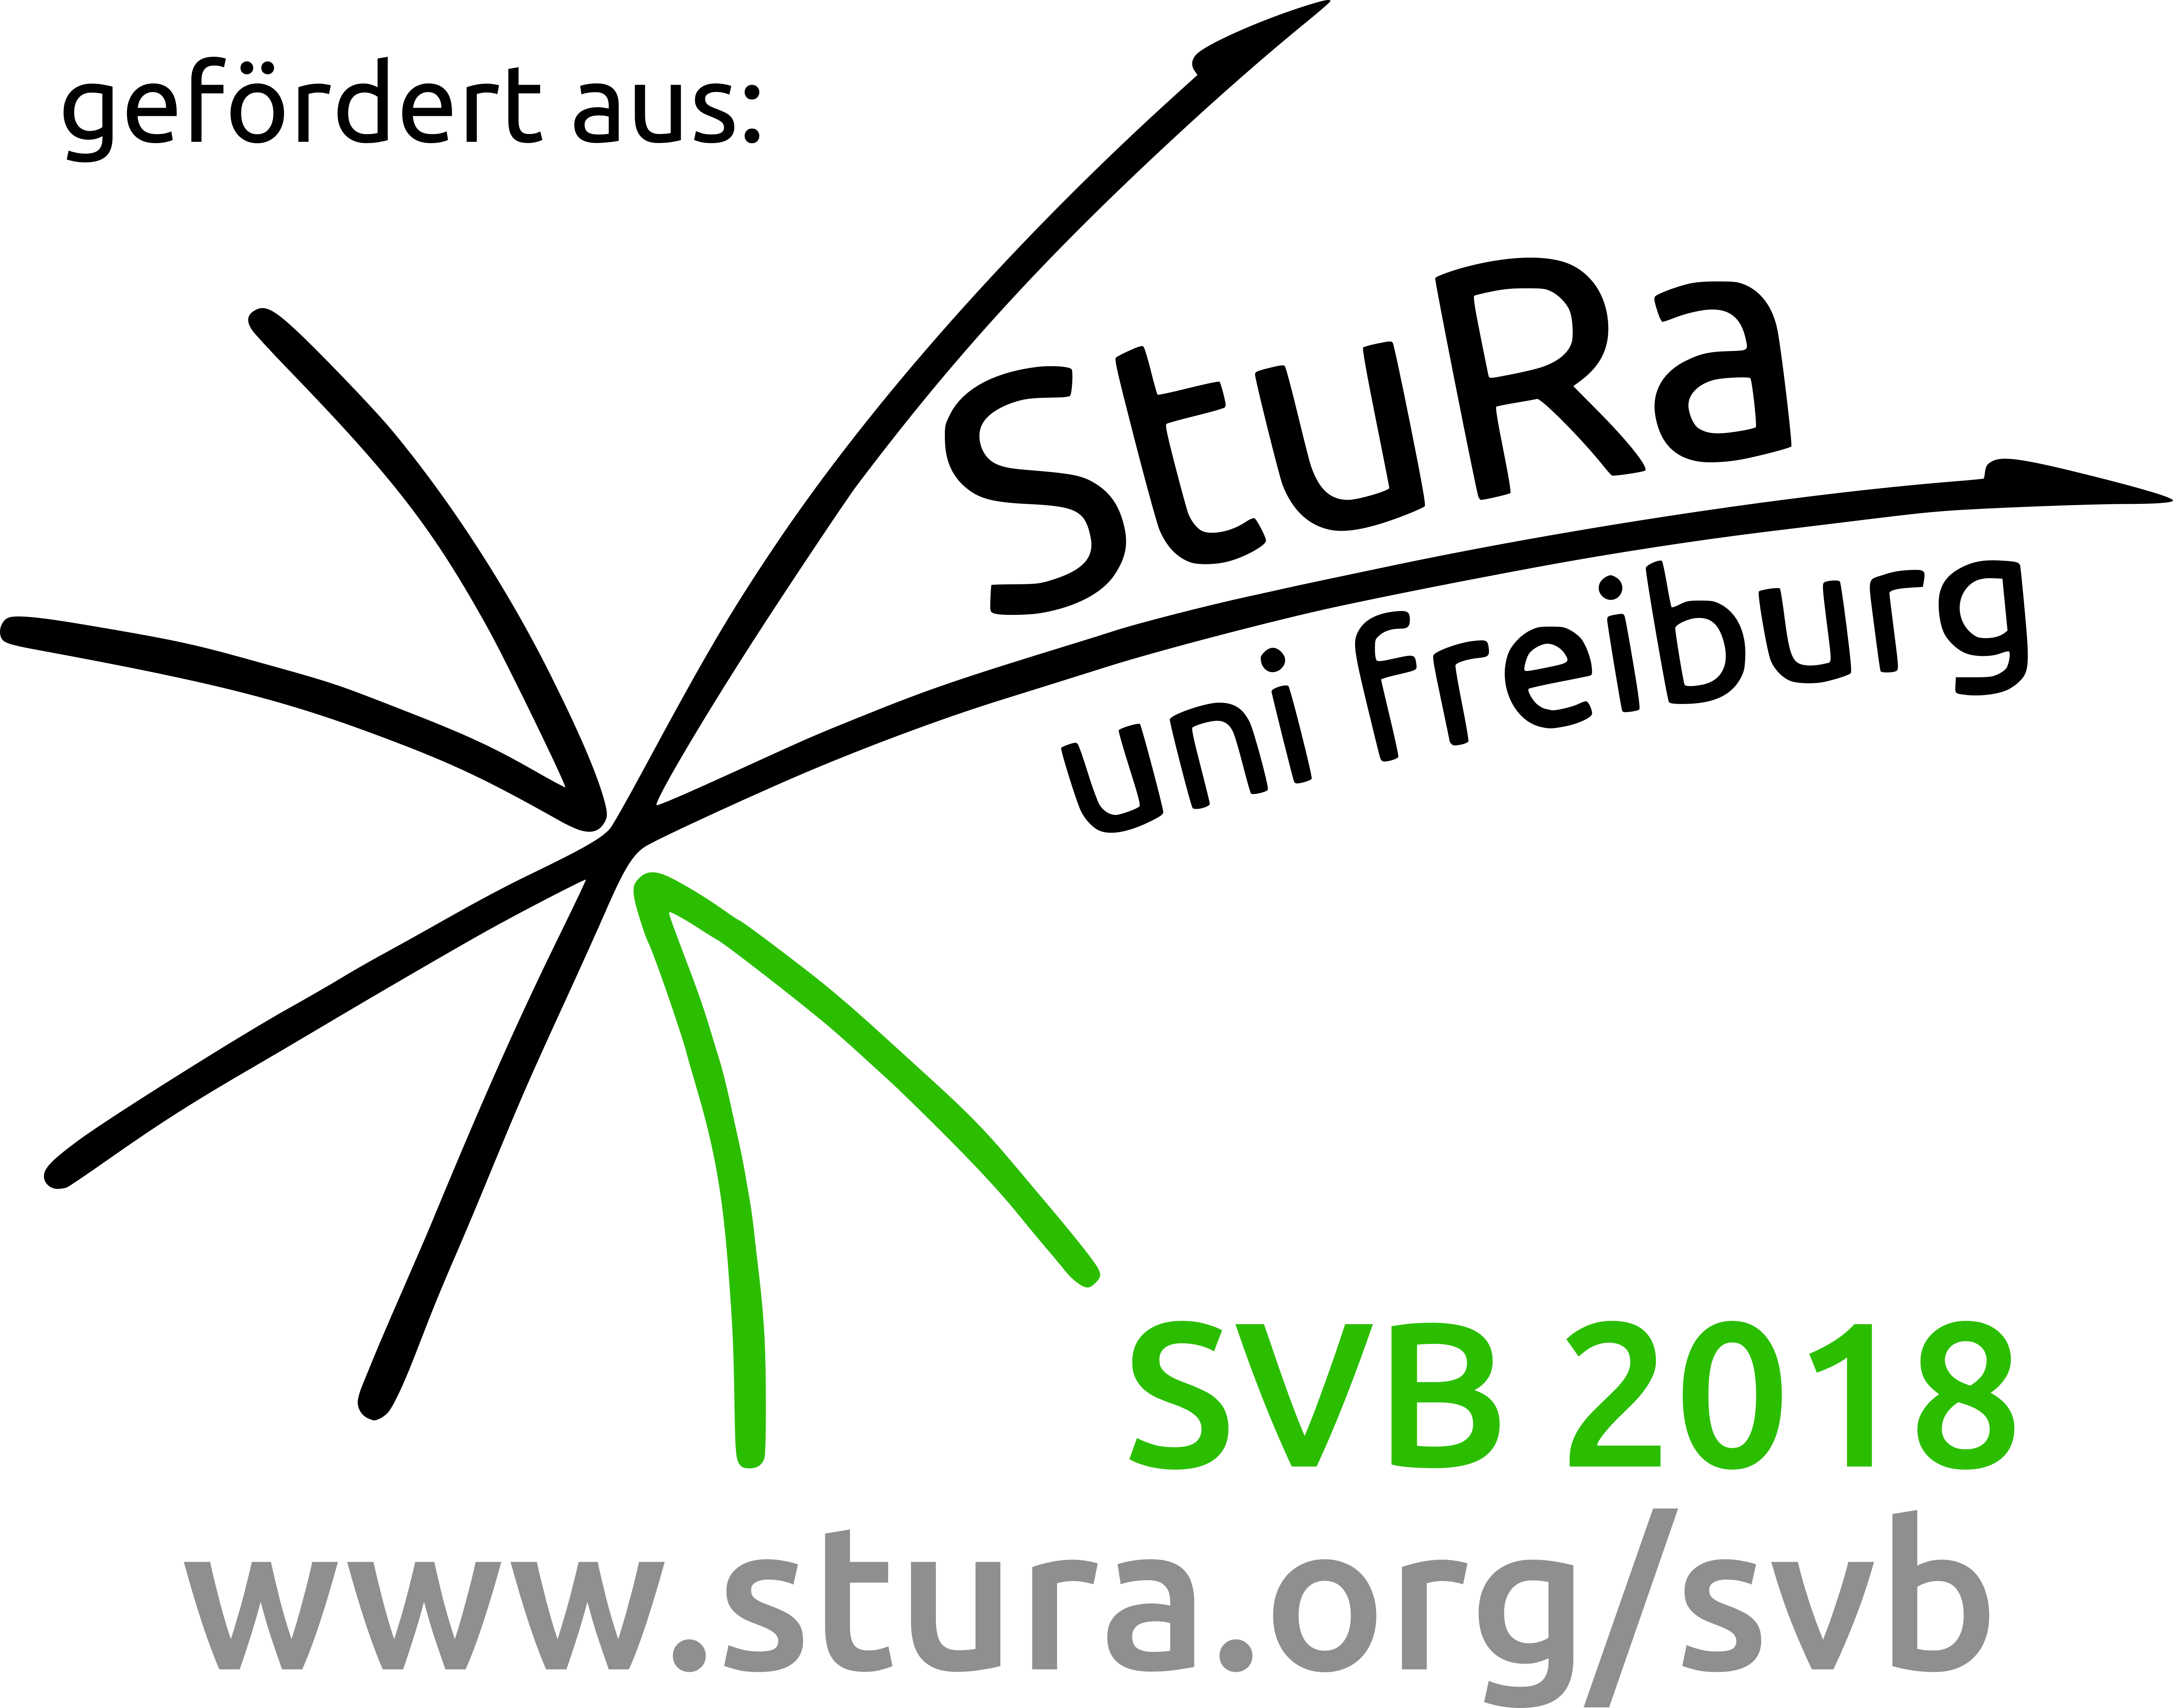 Logo StuRa Innovatives Studium SVB.jpg